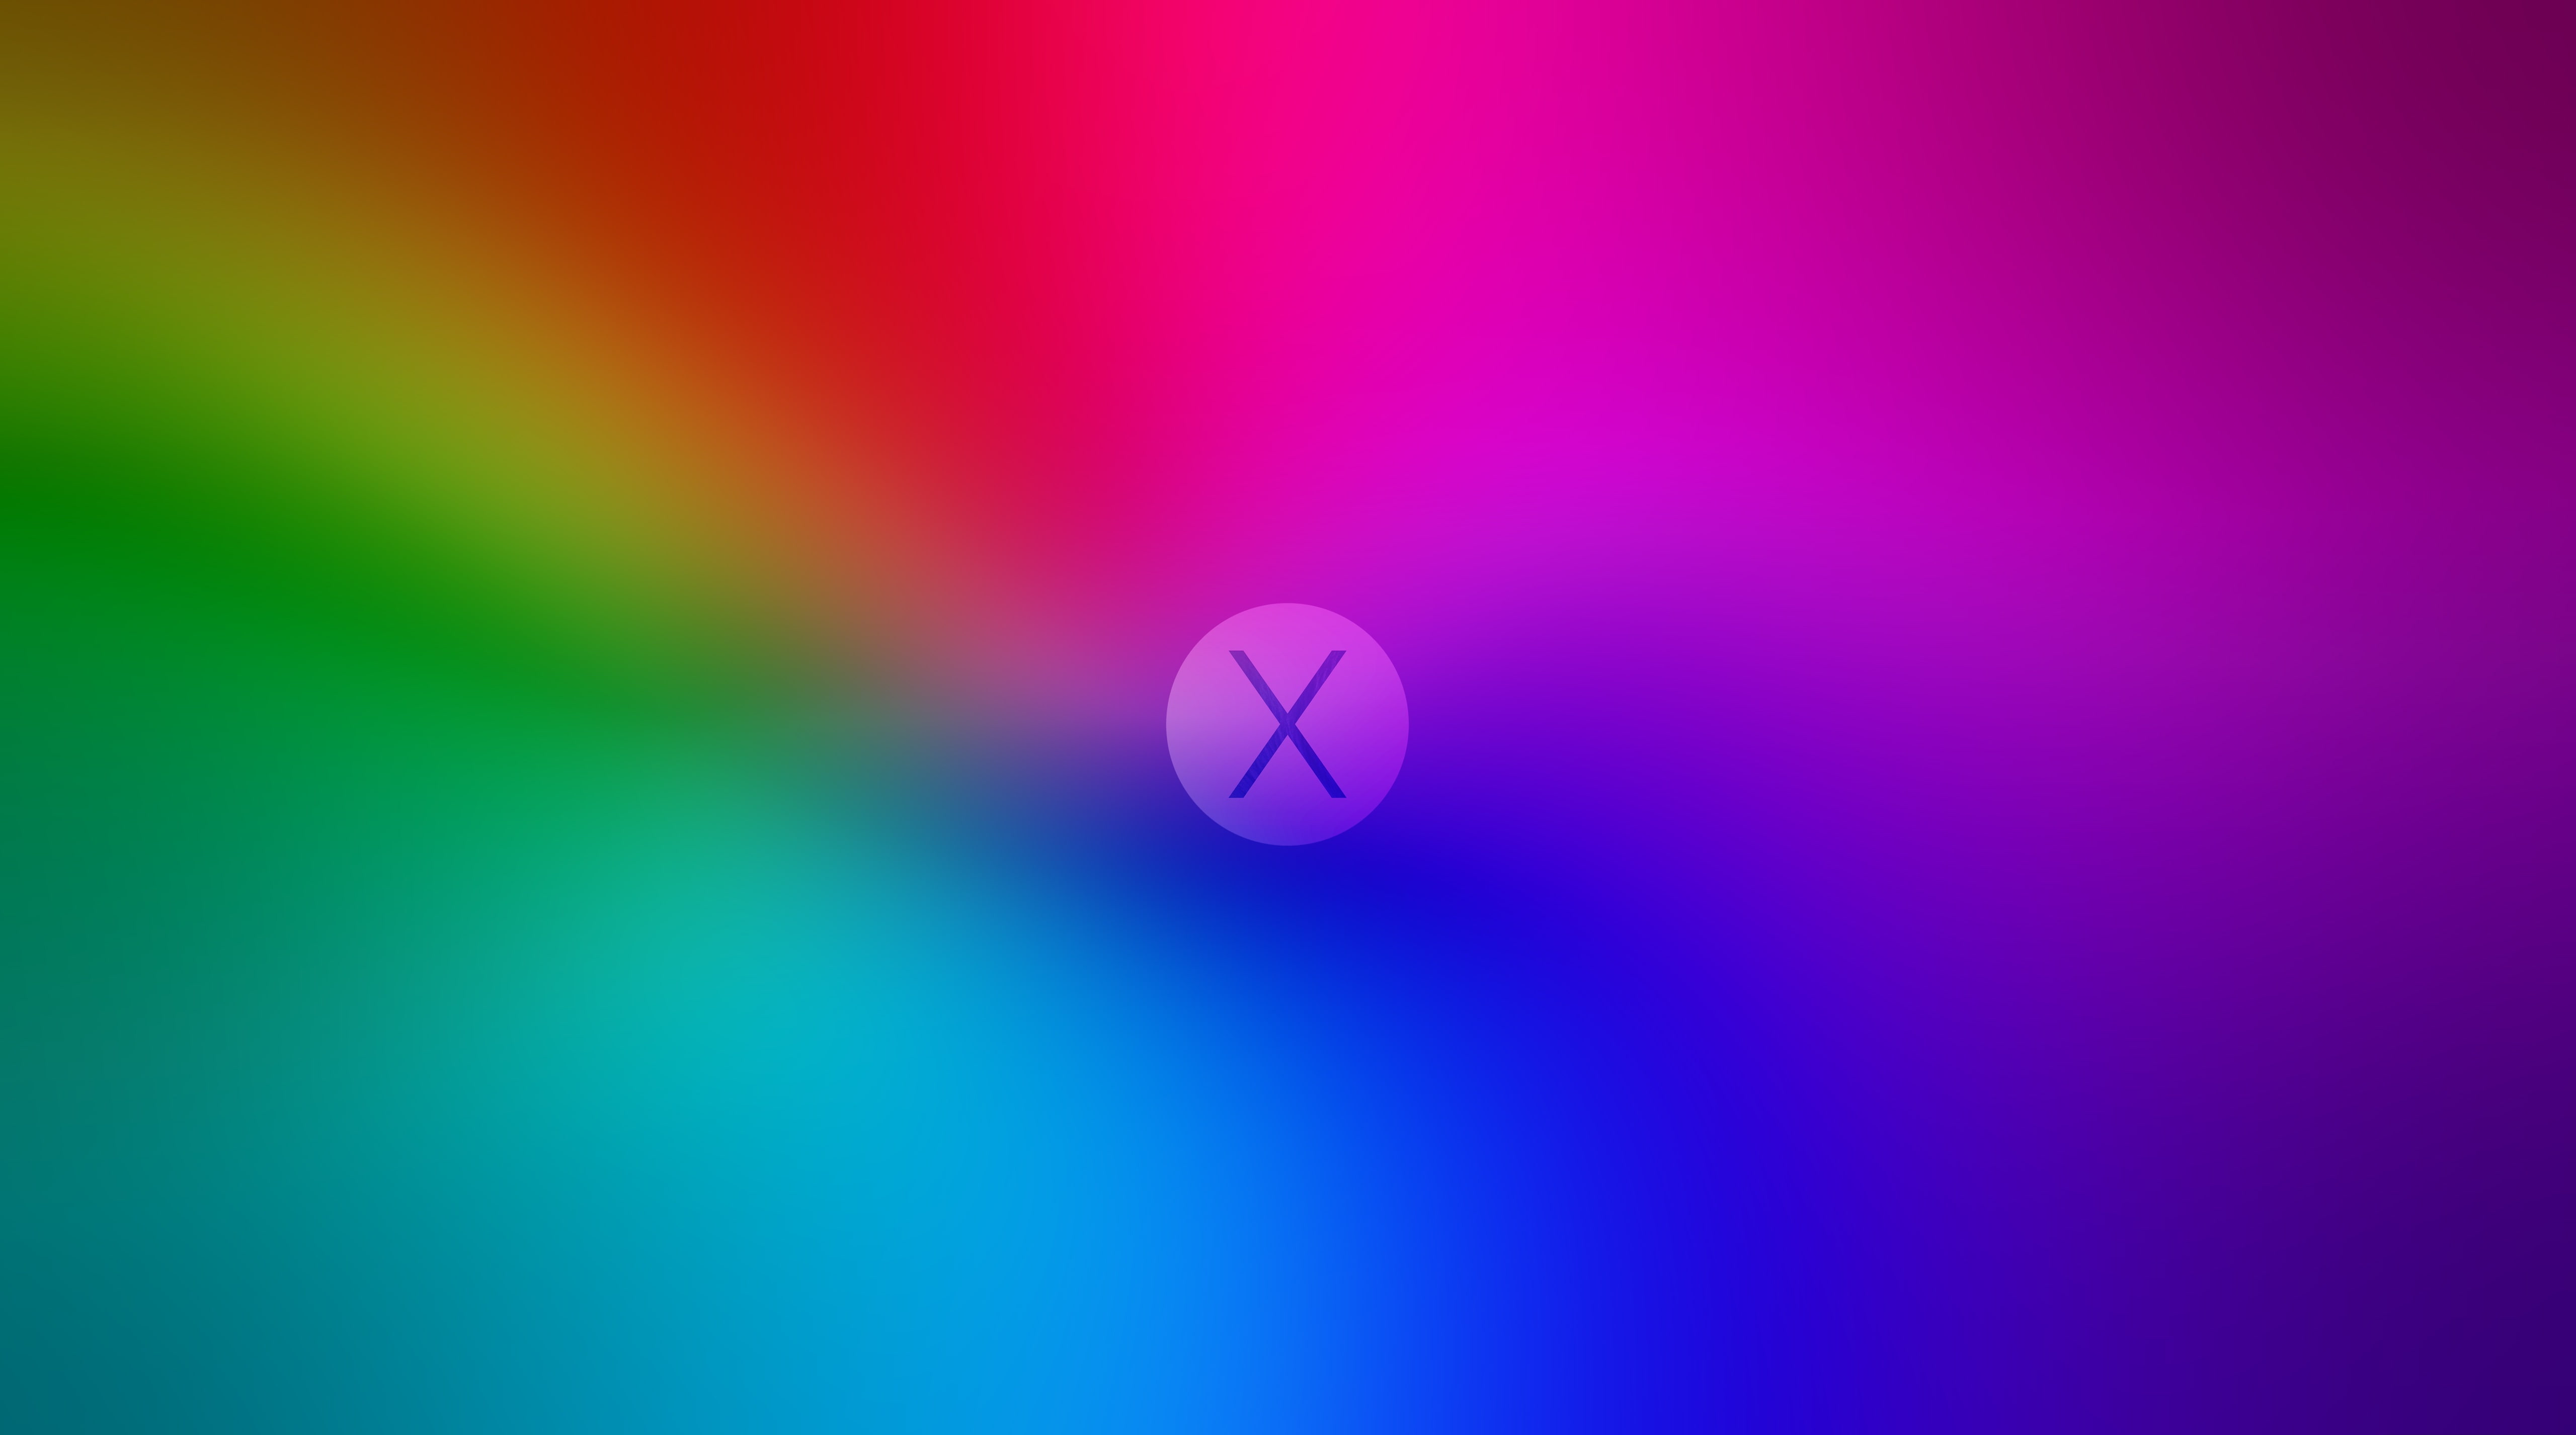 FoMef - iPhone X - iMac Pro 5K, multicolored wallpaper, Aero